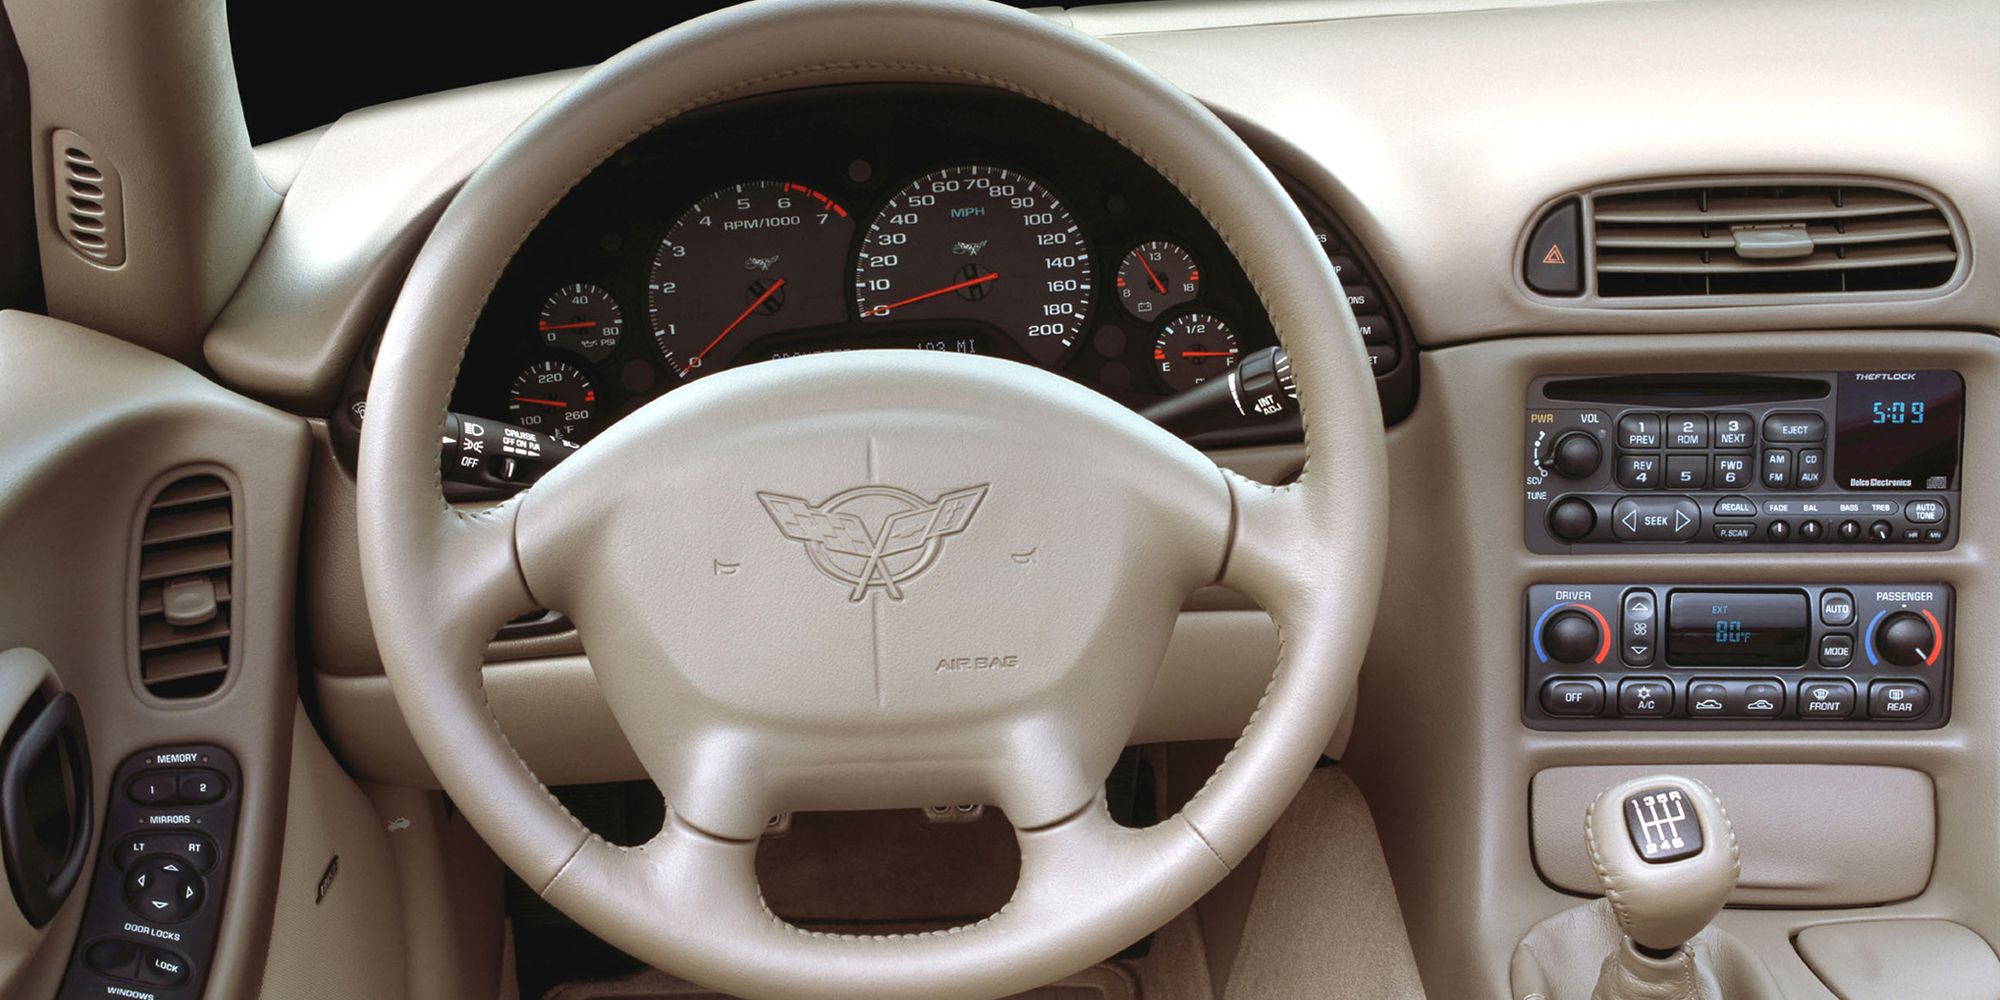 The interior of the C5 Corvette 30th Anniversary Edition